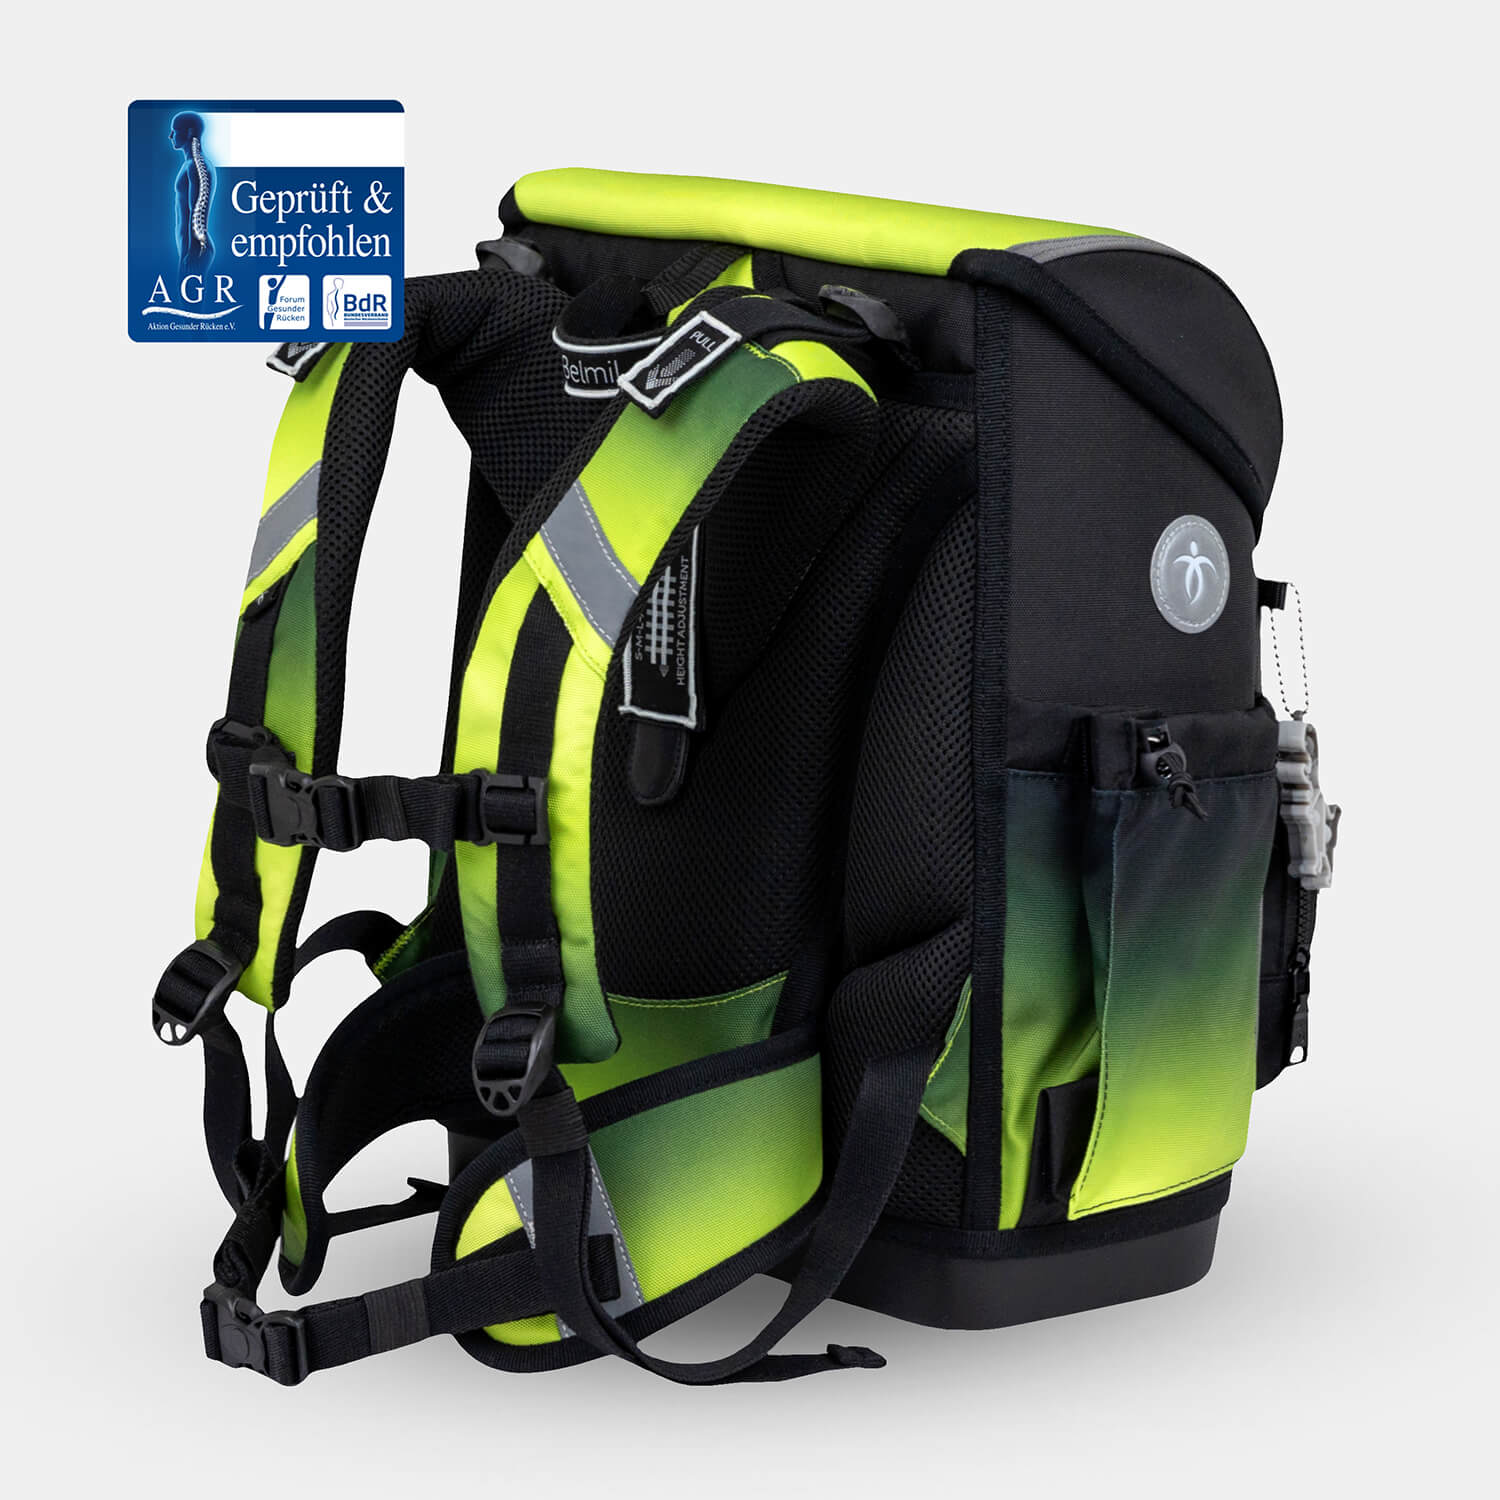 Compact Plus Black Green Schoolbag set 5pcs.